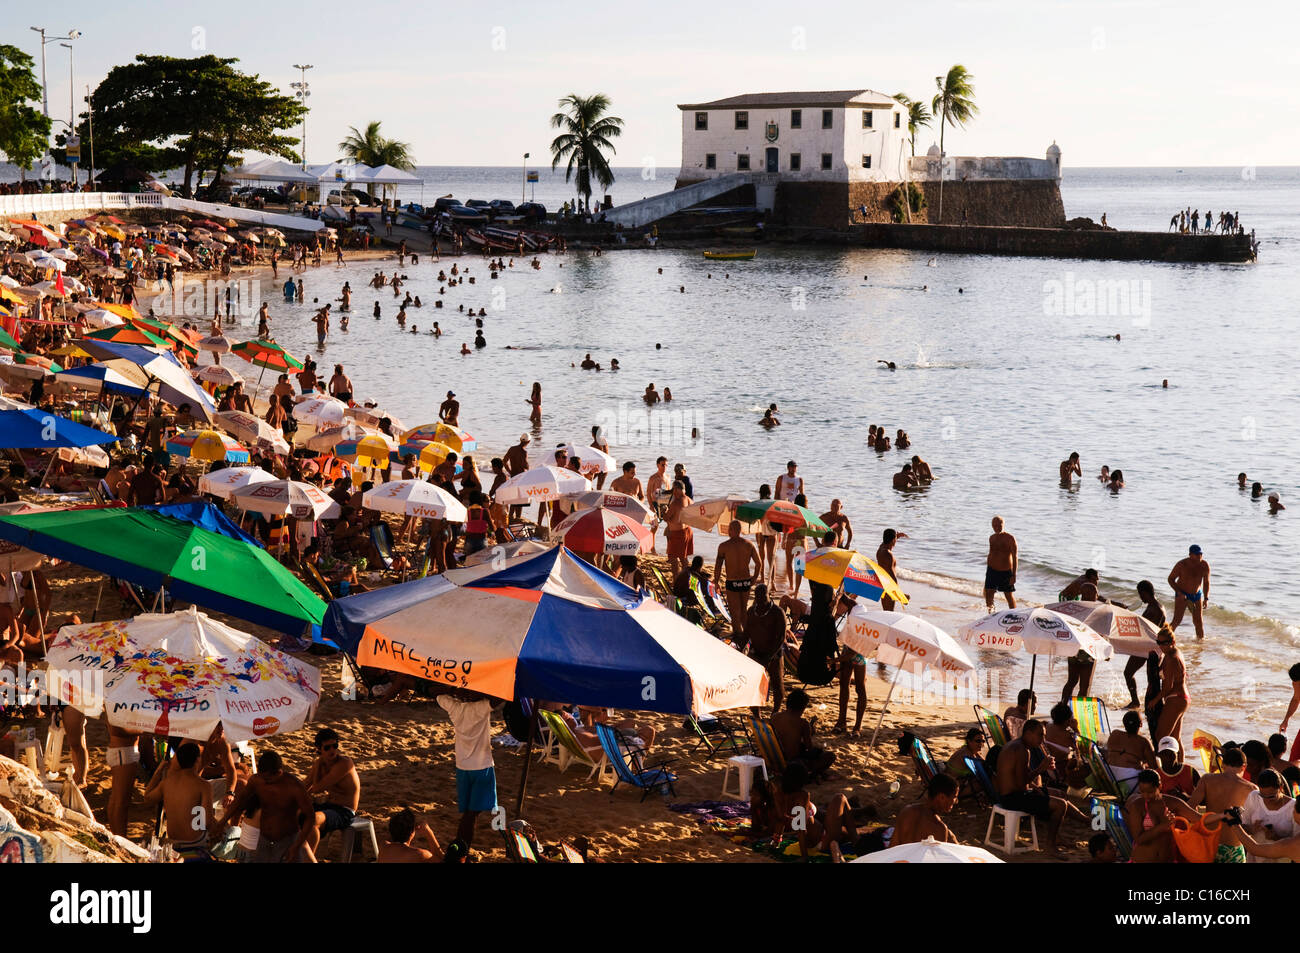 Praia Porto da Barra, the main beach of Salvador, with Forte Santa Maria fort, Salvador de Bahia, Bahia, Brazil, South America Stock Photo